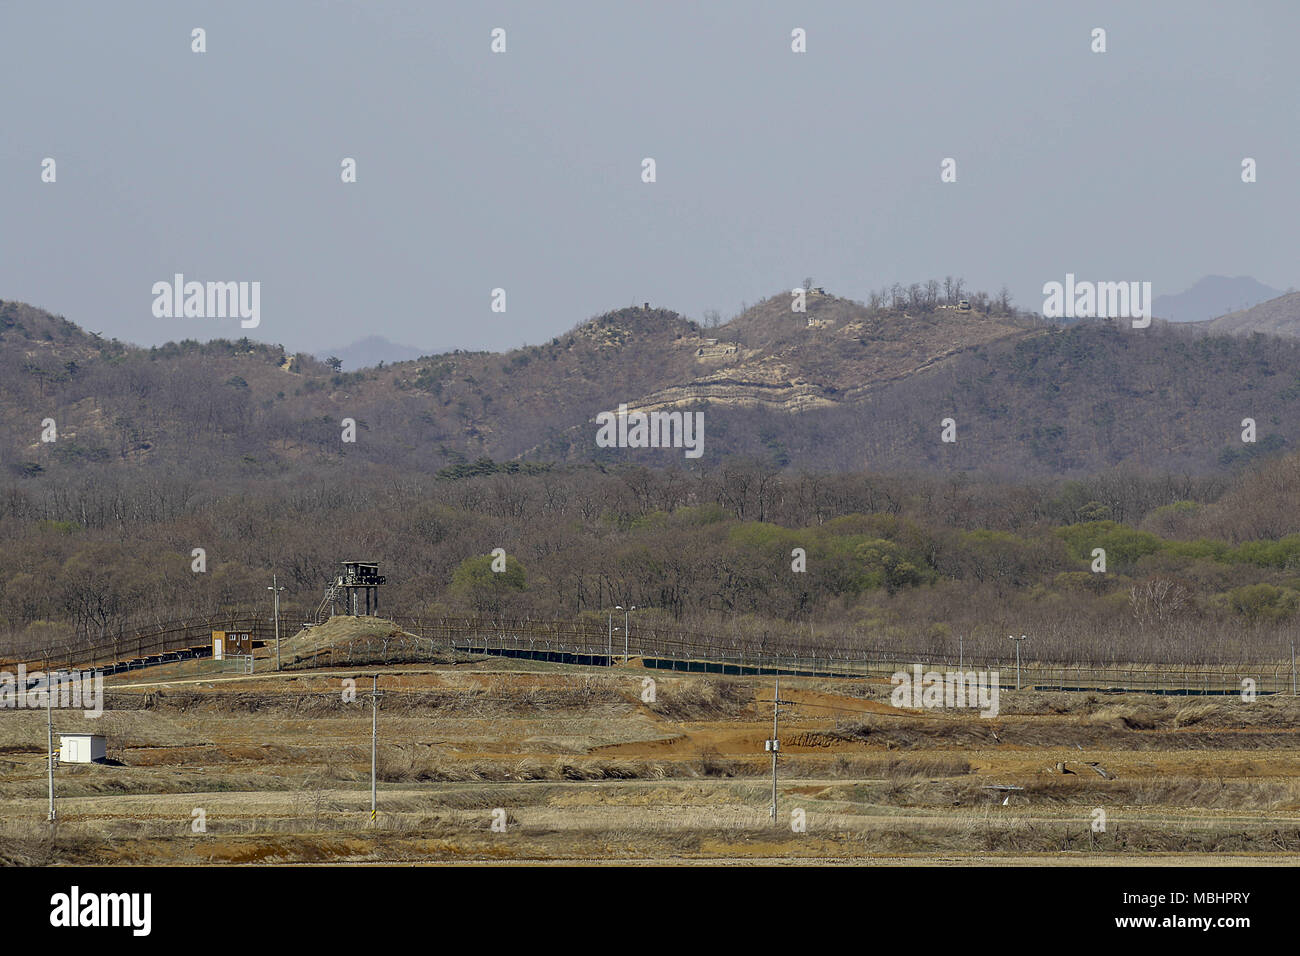 Cheorwon, GANGWON, EN CORÉE DU SUD. Apr 11, 2018. 11 avril 2018, Goyang-Corée du sud-Vue de la guerre de Corée de cheval blanc et le contrôle civil en ligne de Cheorwon, la Corée du Sud. La bataille de White Horse est un autre dans une série de batailles sanglantes pour une colline dominant position au cours de la guerre de Corée. Baengma-le goji était un 395 mètres (1 296 ft) Hill dans le Triangle de Fer, formée par Pyonggang à son apogée et Gimhwa-eup et Cheorwon à sa base, était une voie de transport stratégique dans la région centrale de la péninsule coréenne. Cheval blanc est la crête d'une colline boisée qui s'étendait de masse dans un n Banque D'Images